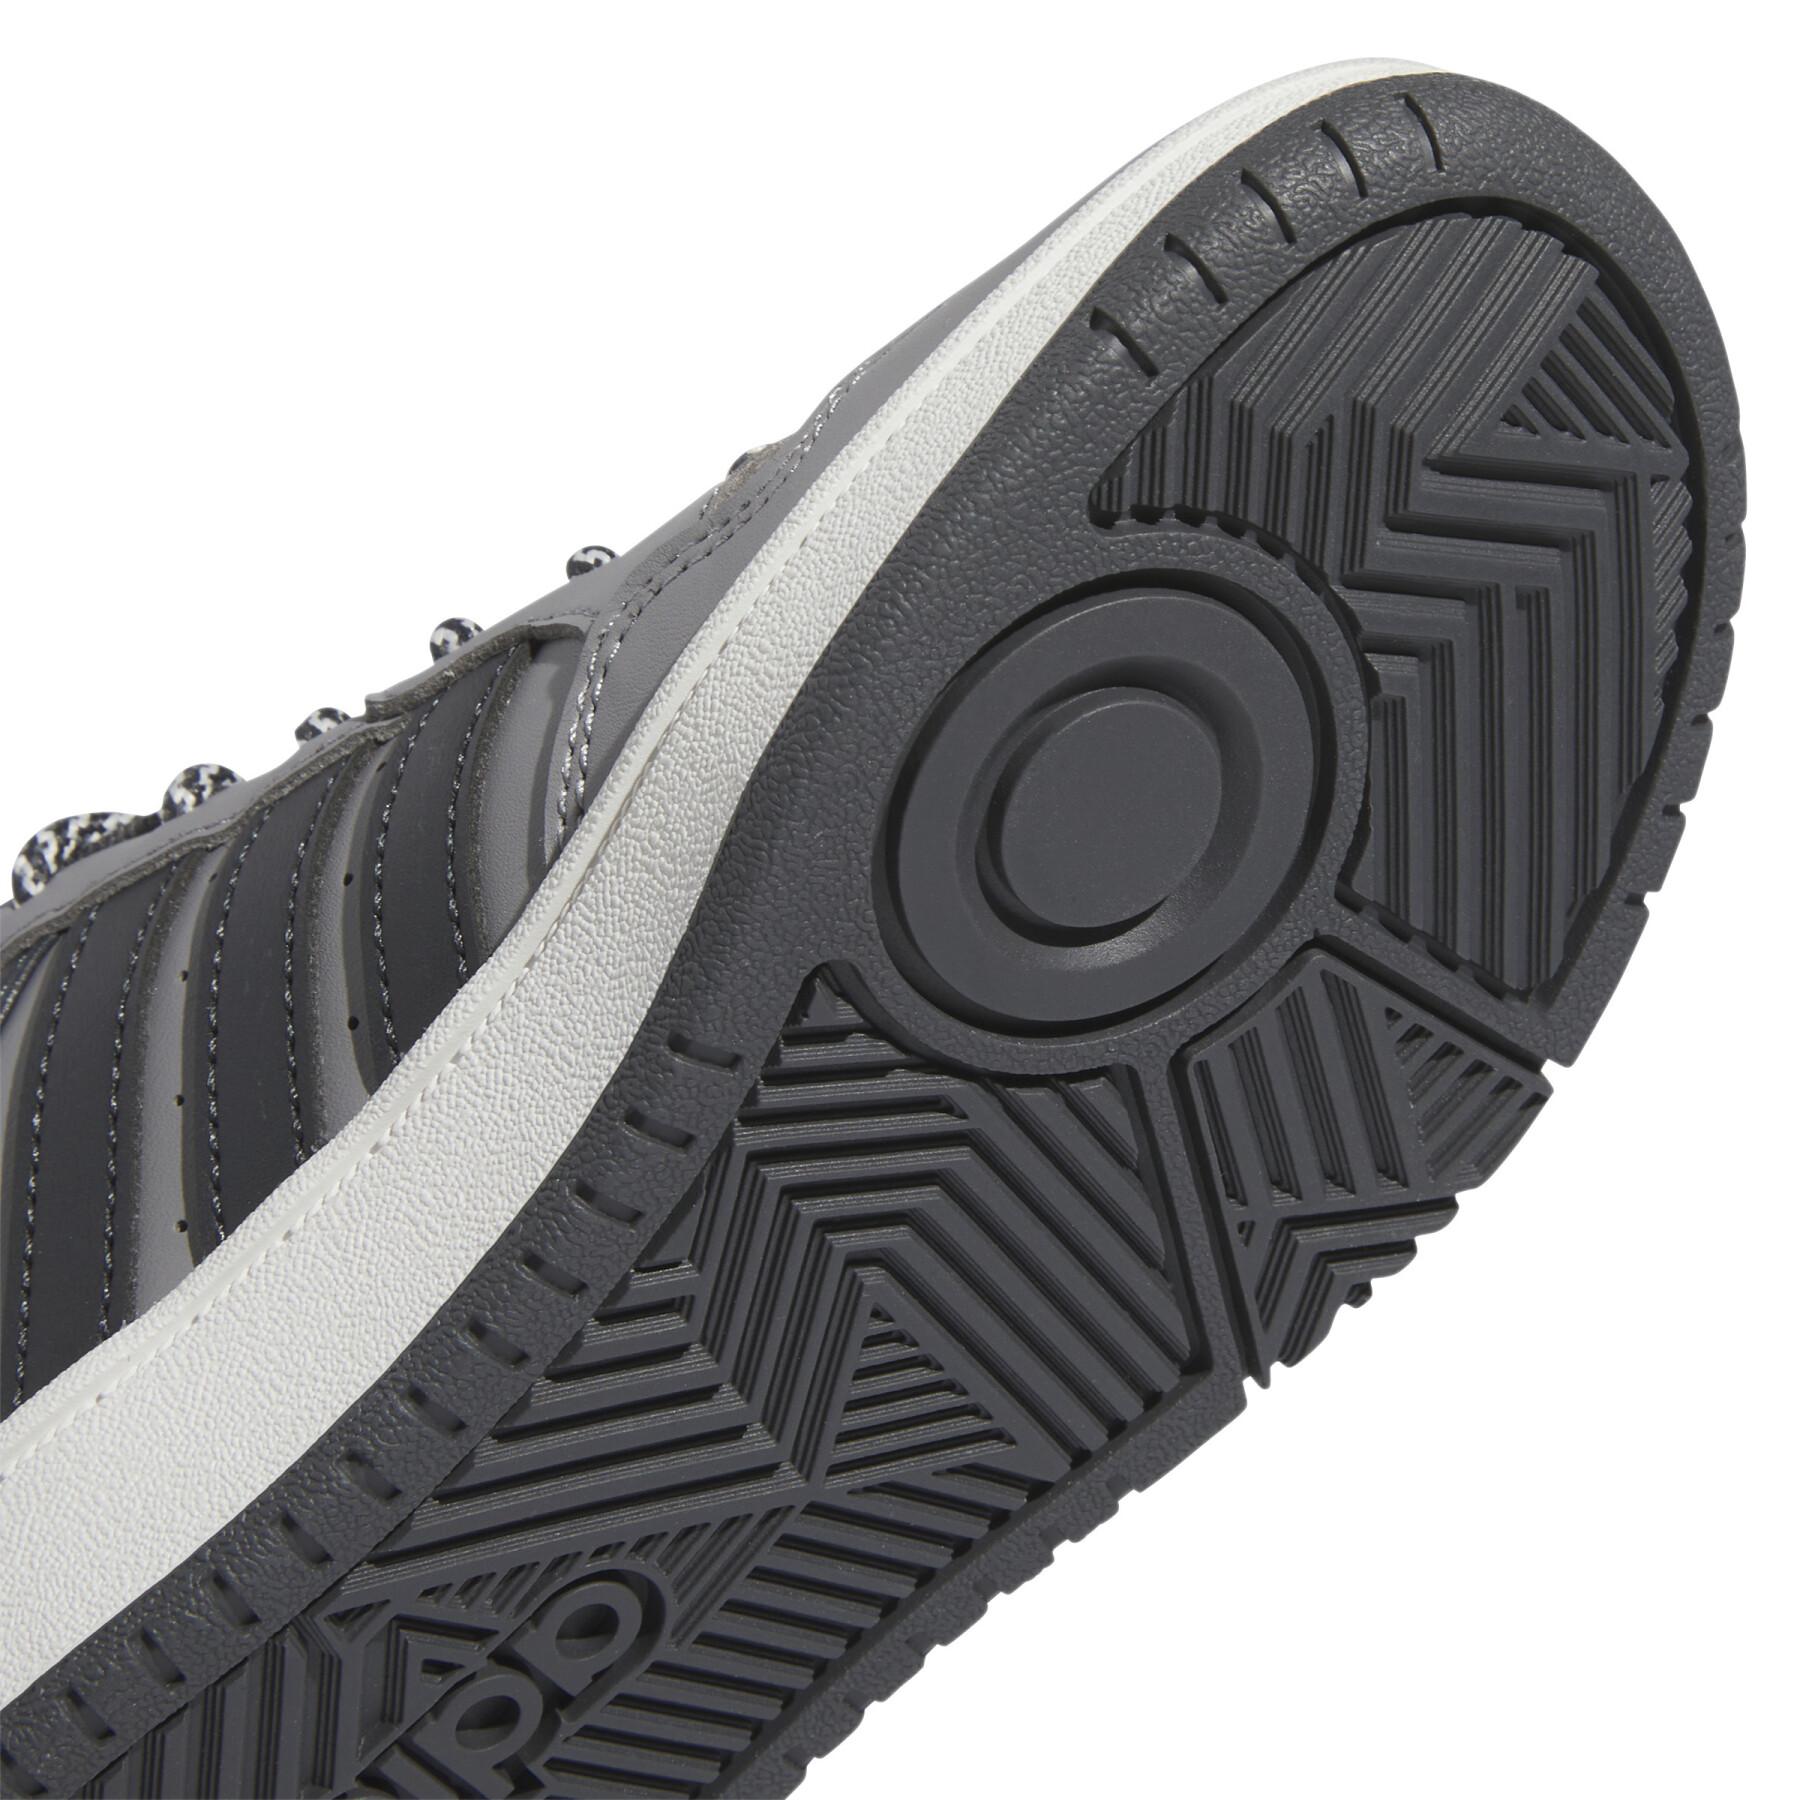 Children's sneakers adidas Originals Hoops 3.0